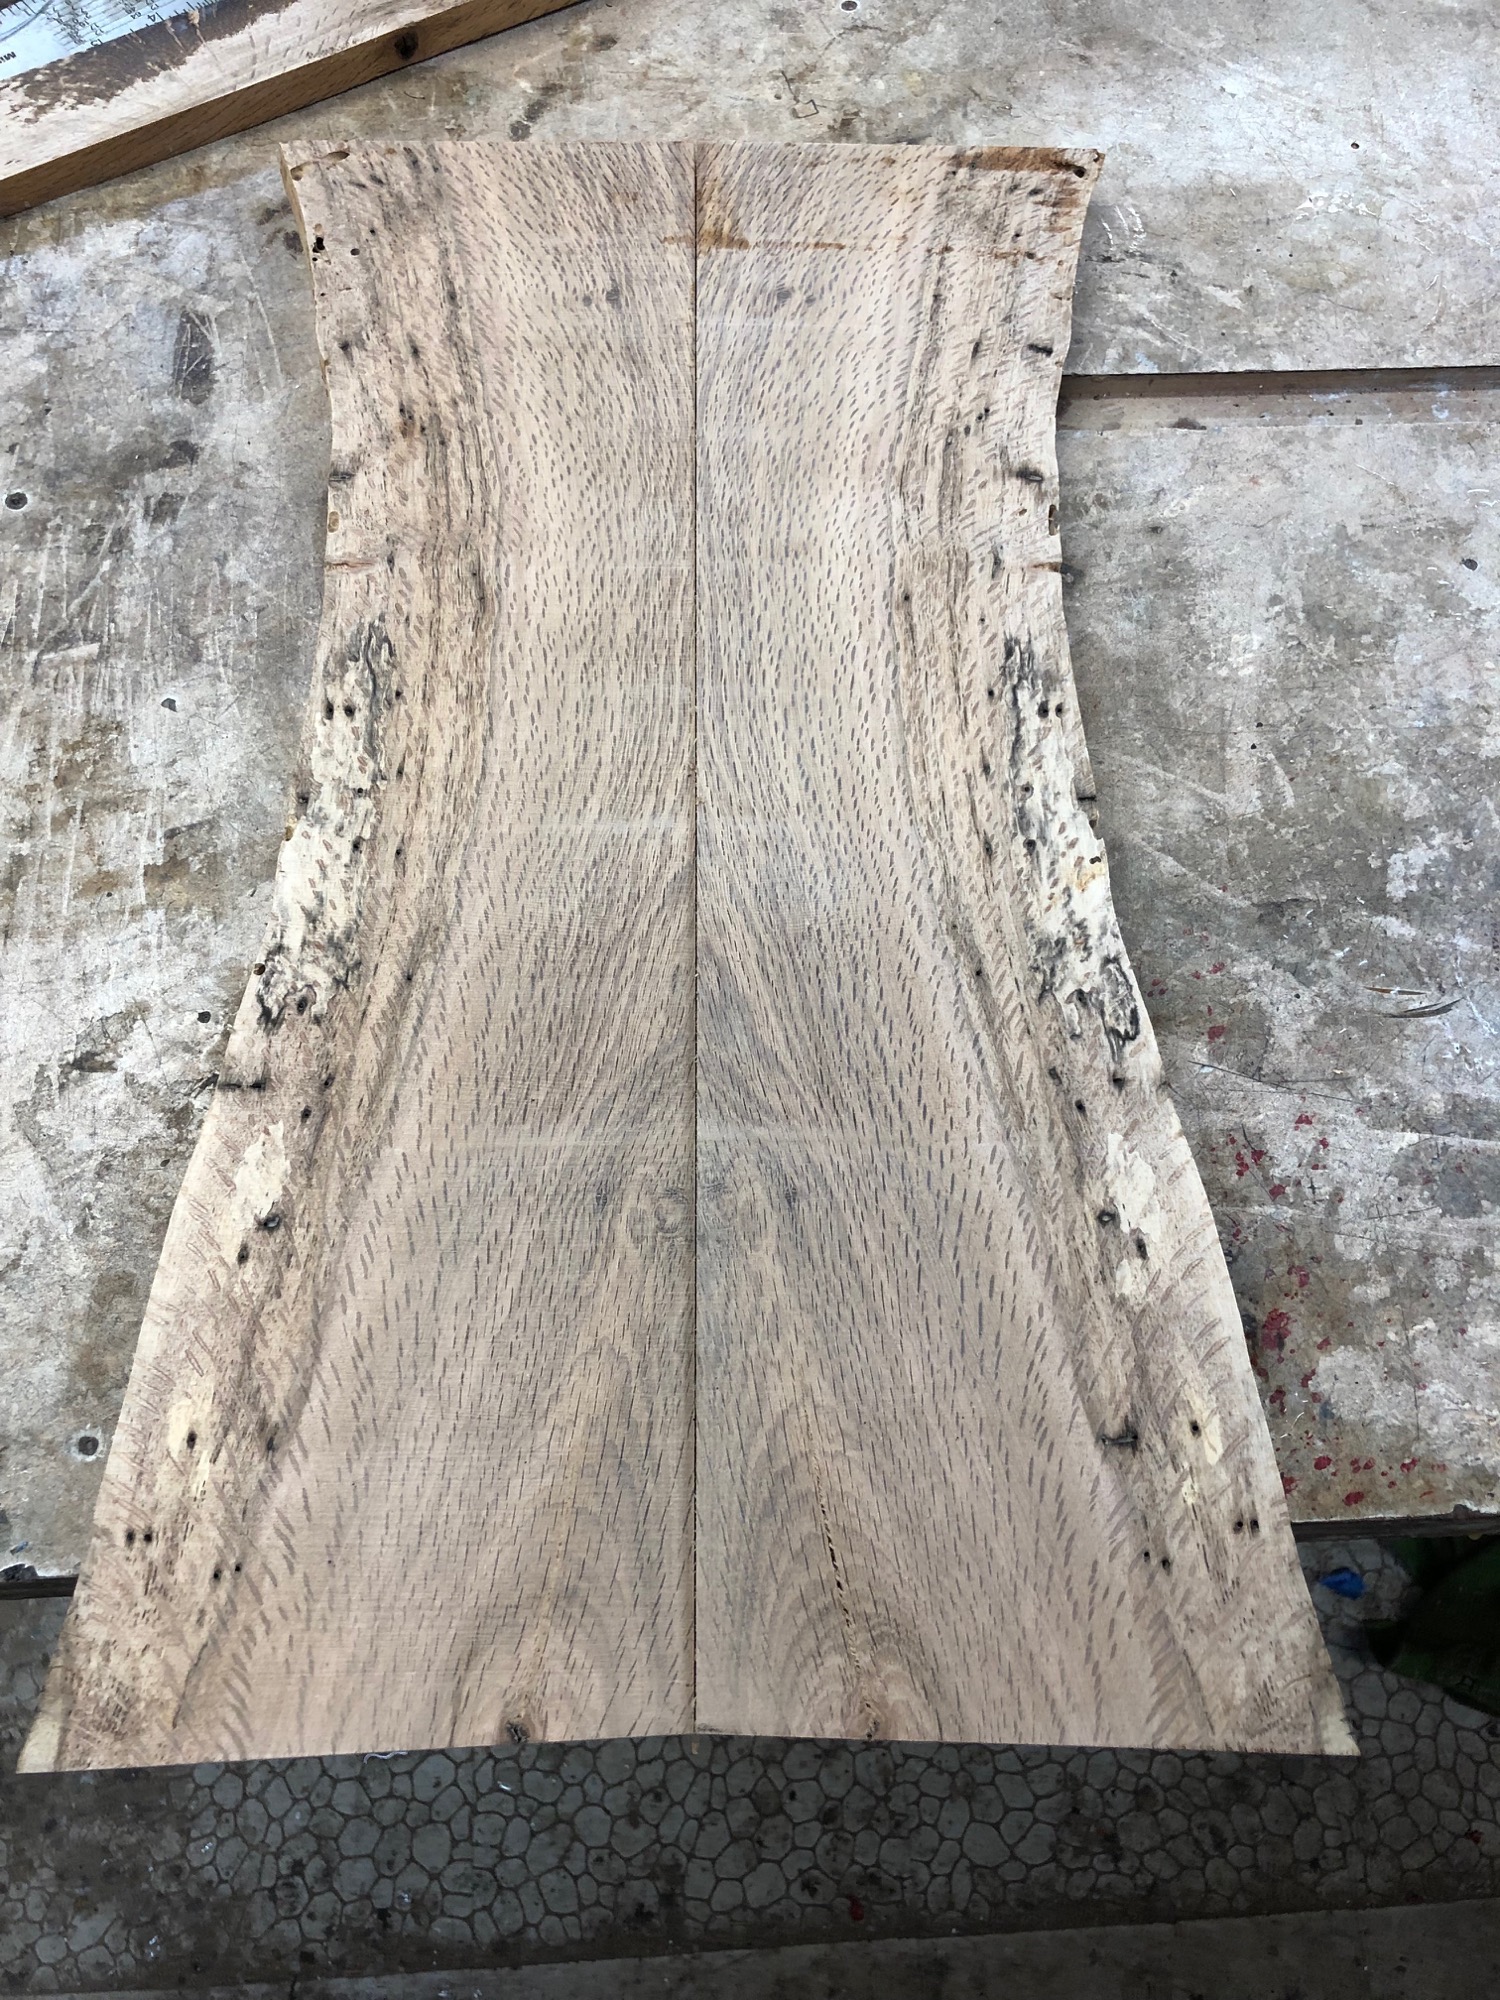 resawn oak wood blanks